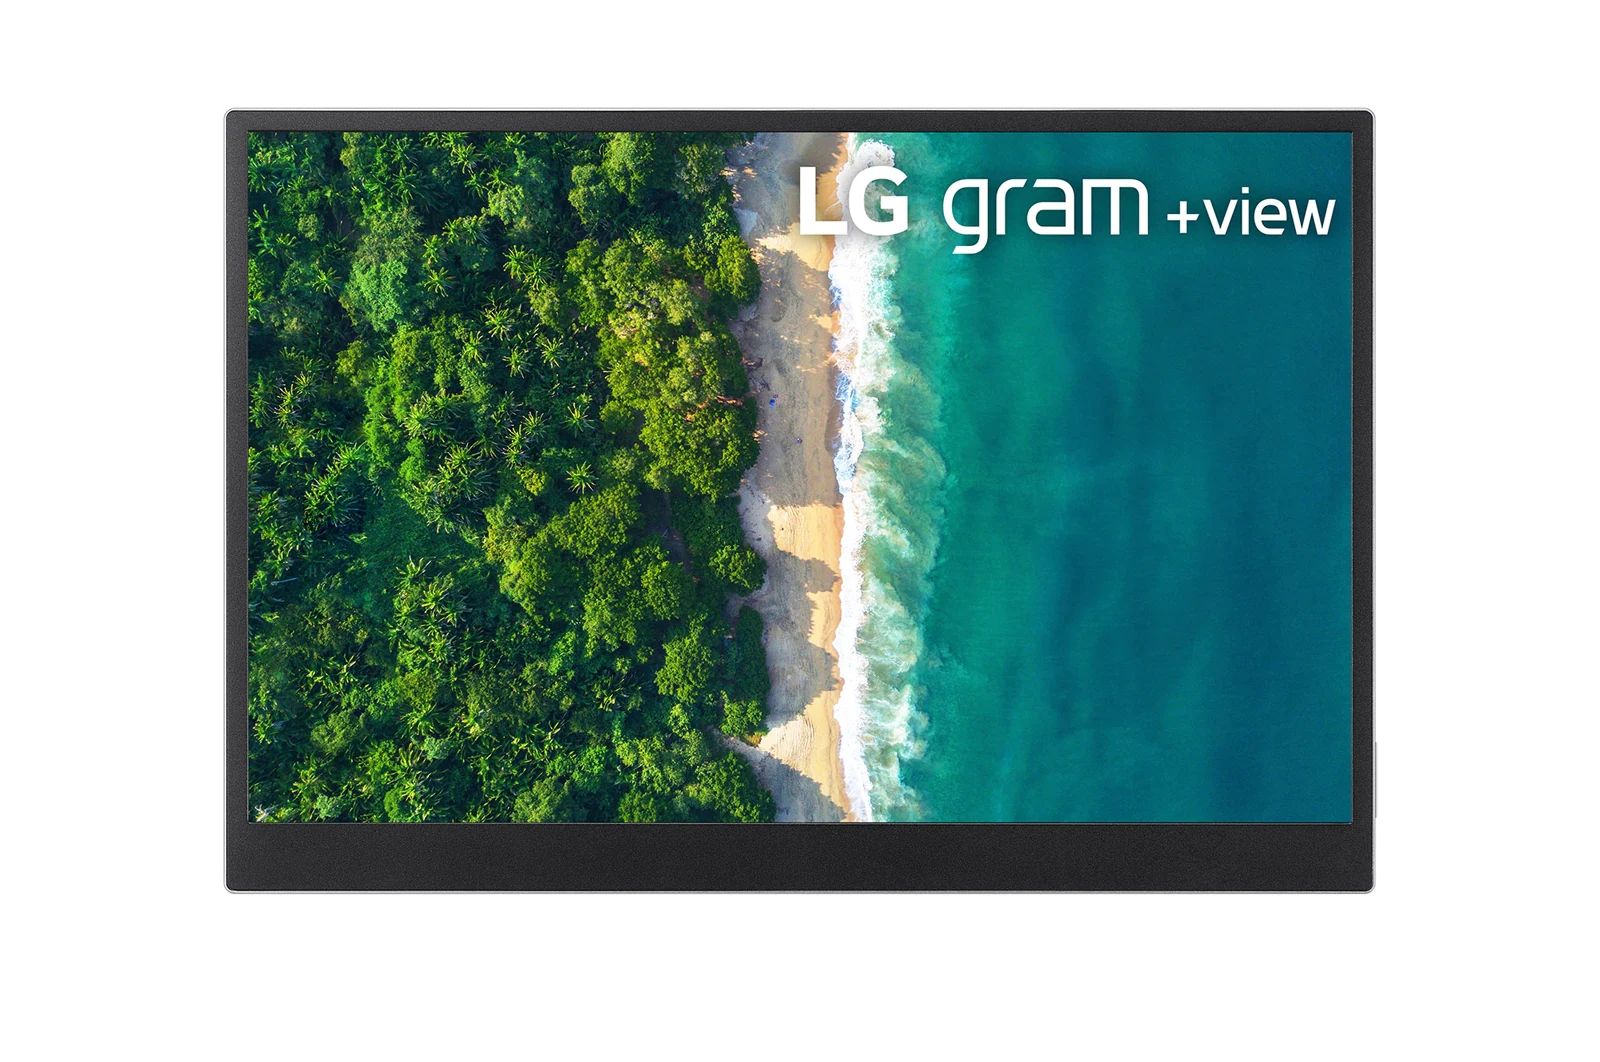 Trải nghiệm nhanh màn hình LG Gram +View nhỏ gọn, độ phân giải 2K, màu sắc đẹp.